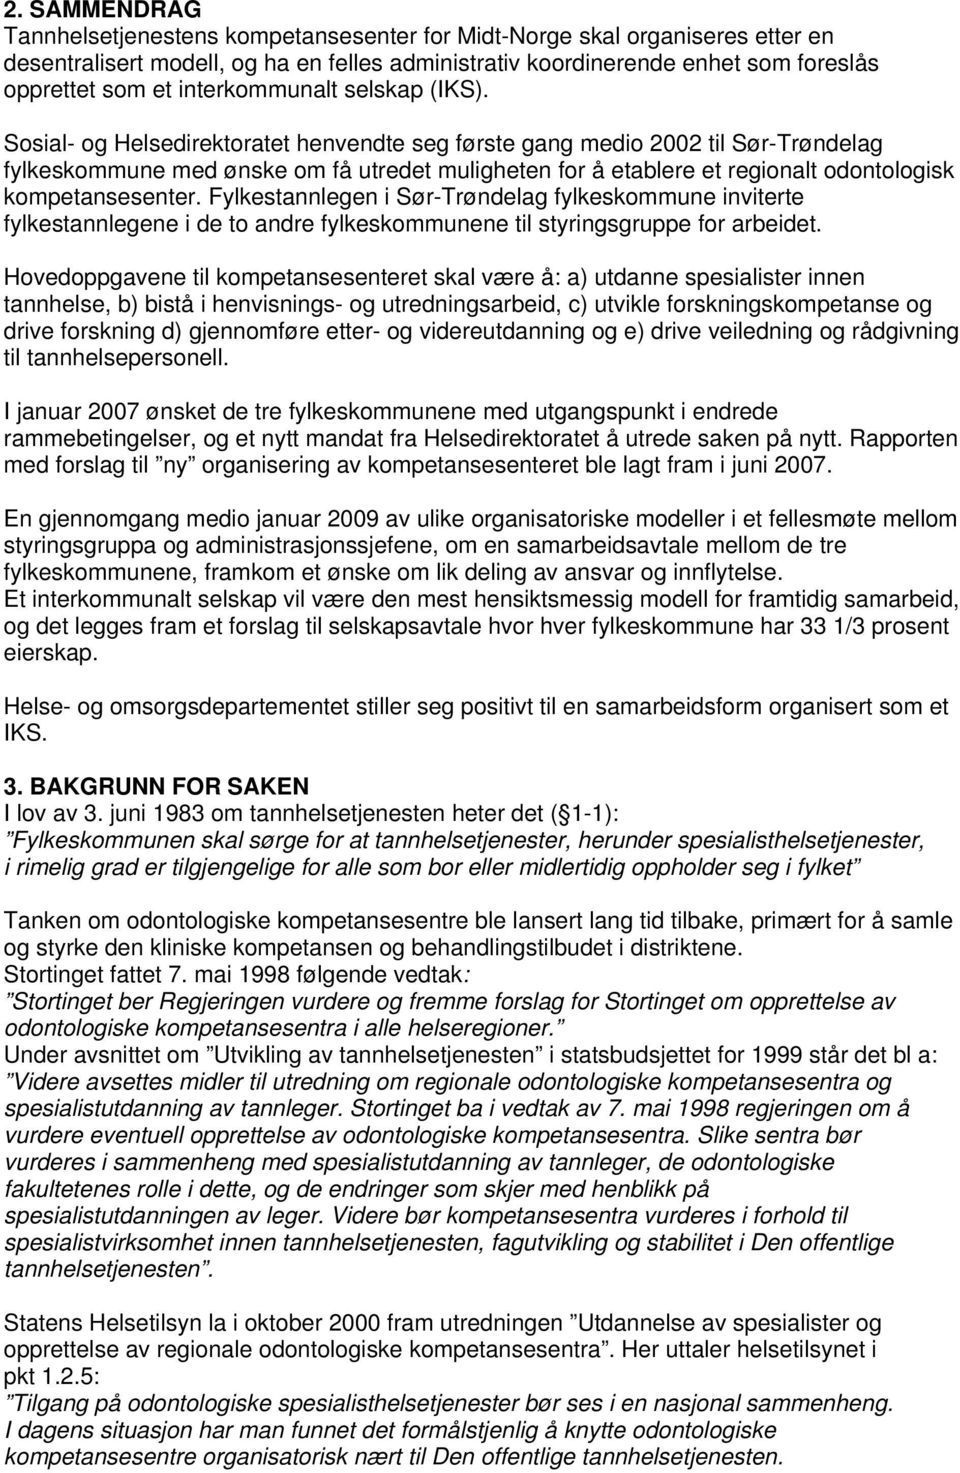 Sosial- og Helsedirektoratet henvendte seg første gang medio 2002 til Sør-Trøndelag fylkeskommune med ønske om få utredet muligheten for å etablere et regionalt odontologisk kompetansesenter.